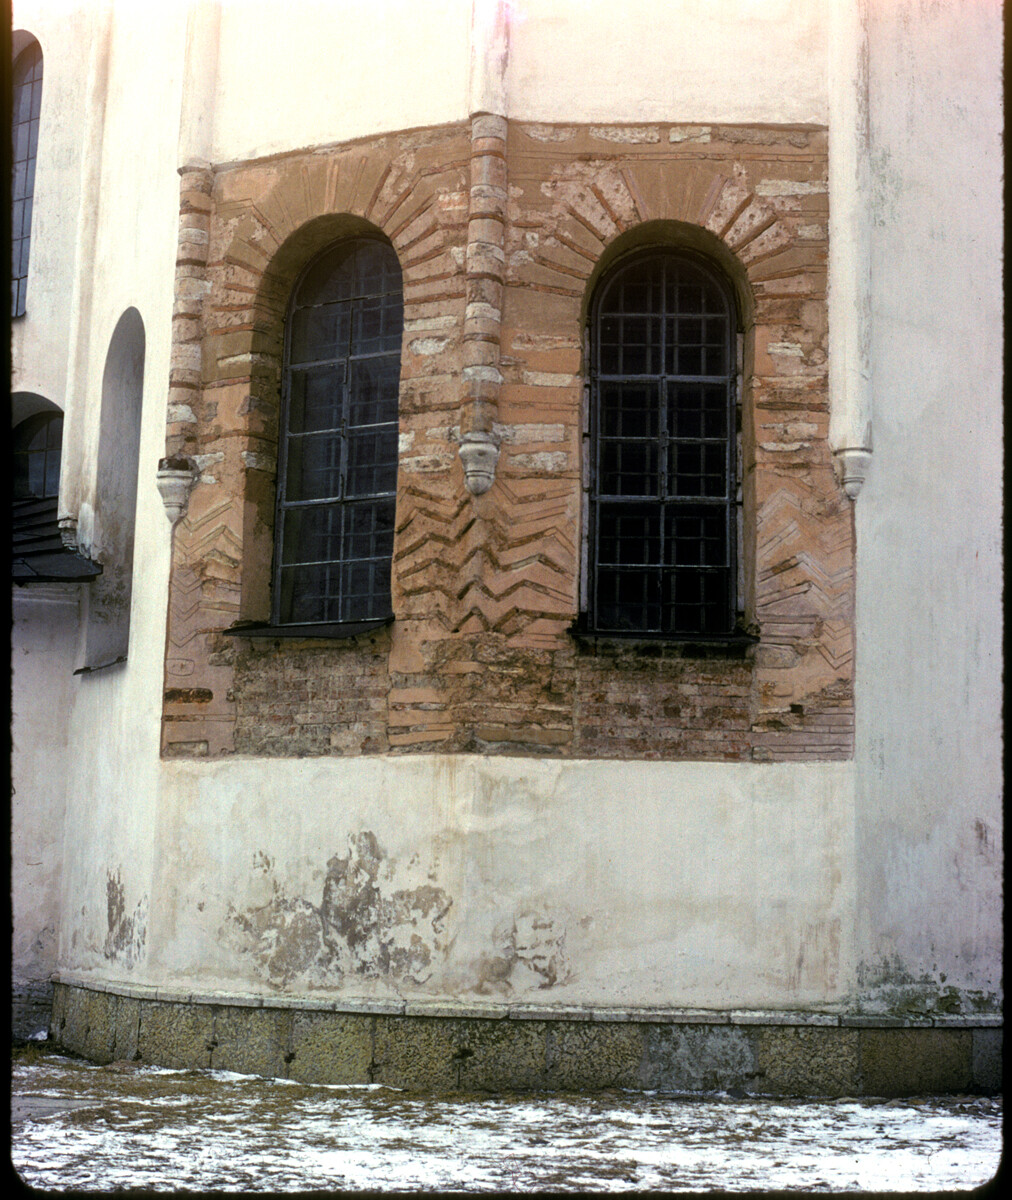 Catedral de Santa Sofía, fachada este. Ábside con detalle de la obra original de ladrillos plintos bajo el estuco. 27 de marzo de 1991